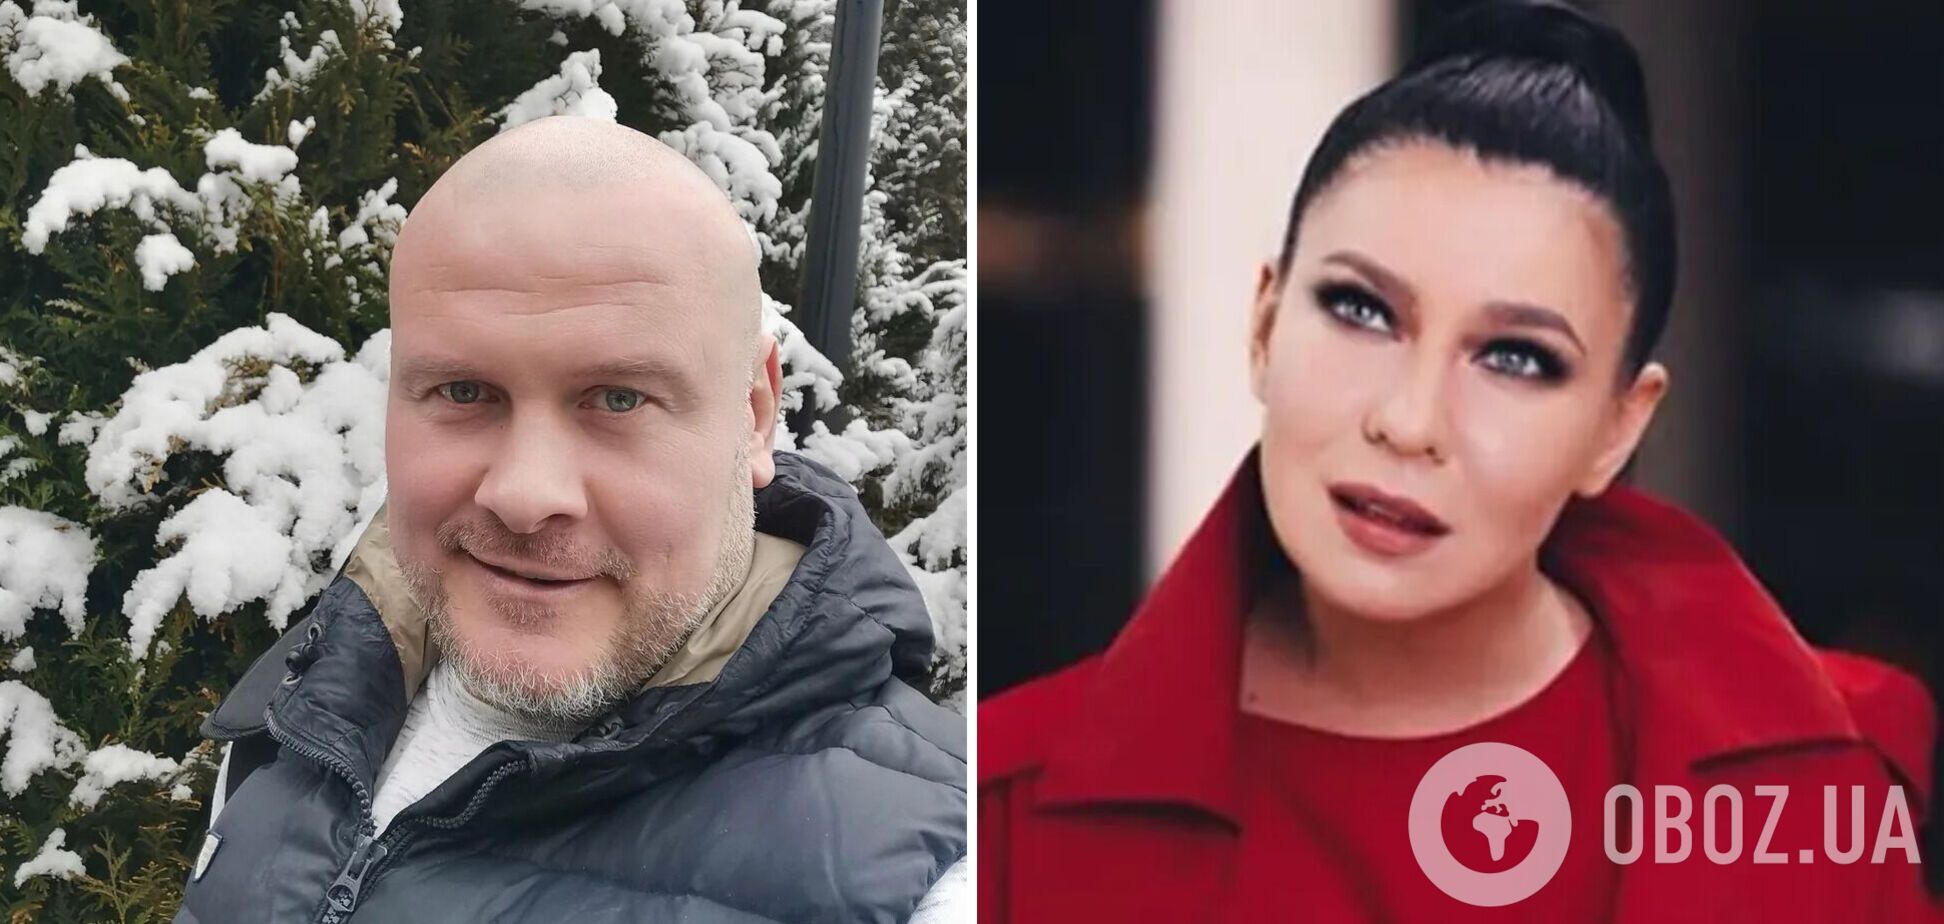 Узелков обозвал Елку 'хвойдой' и вспомнил ее пренебрежительное отношение к коллегам на украинском ТВ